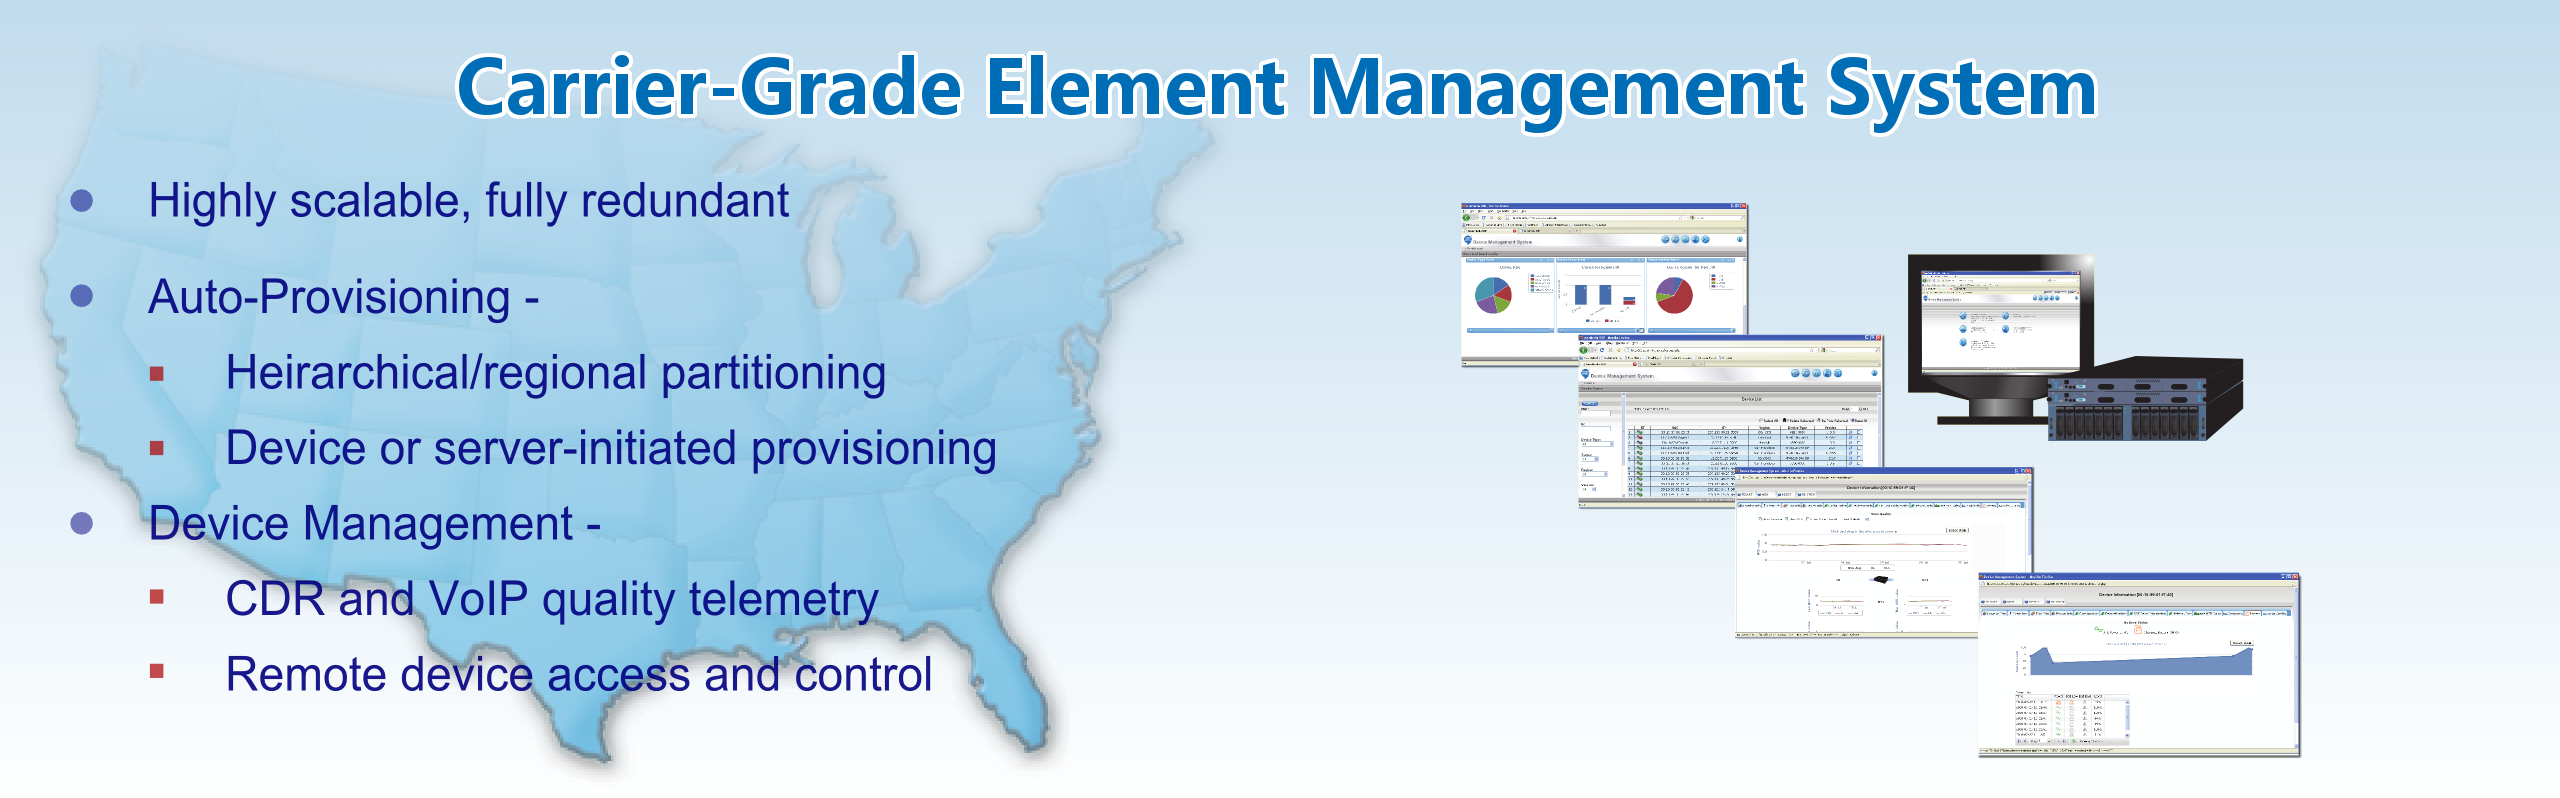 Carrier-Grade Element Management System